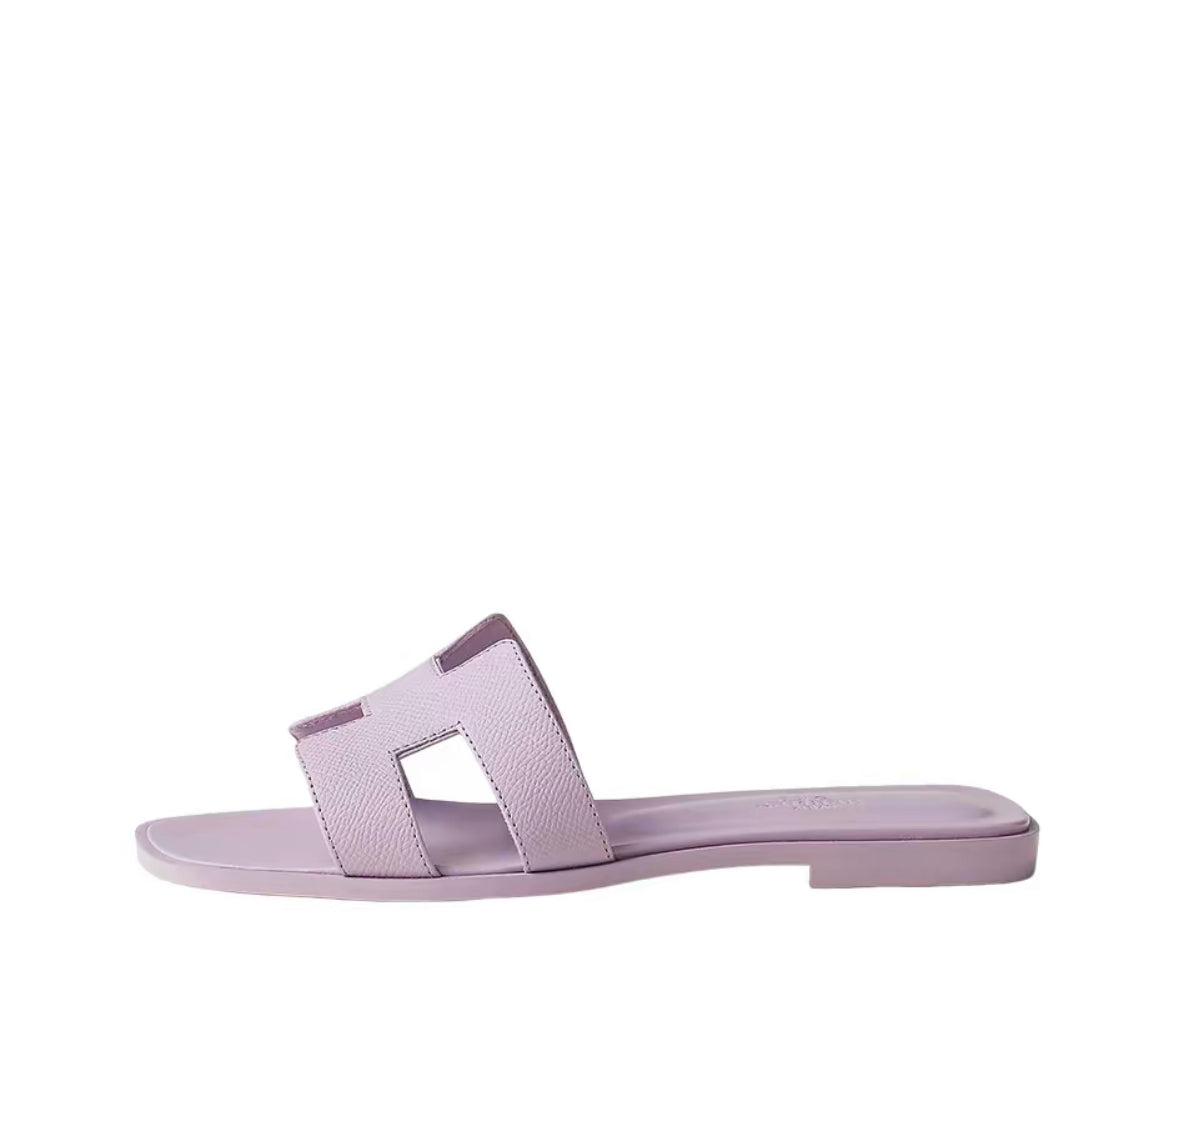 Hermes Oran Sandals “Pink”